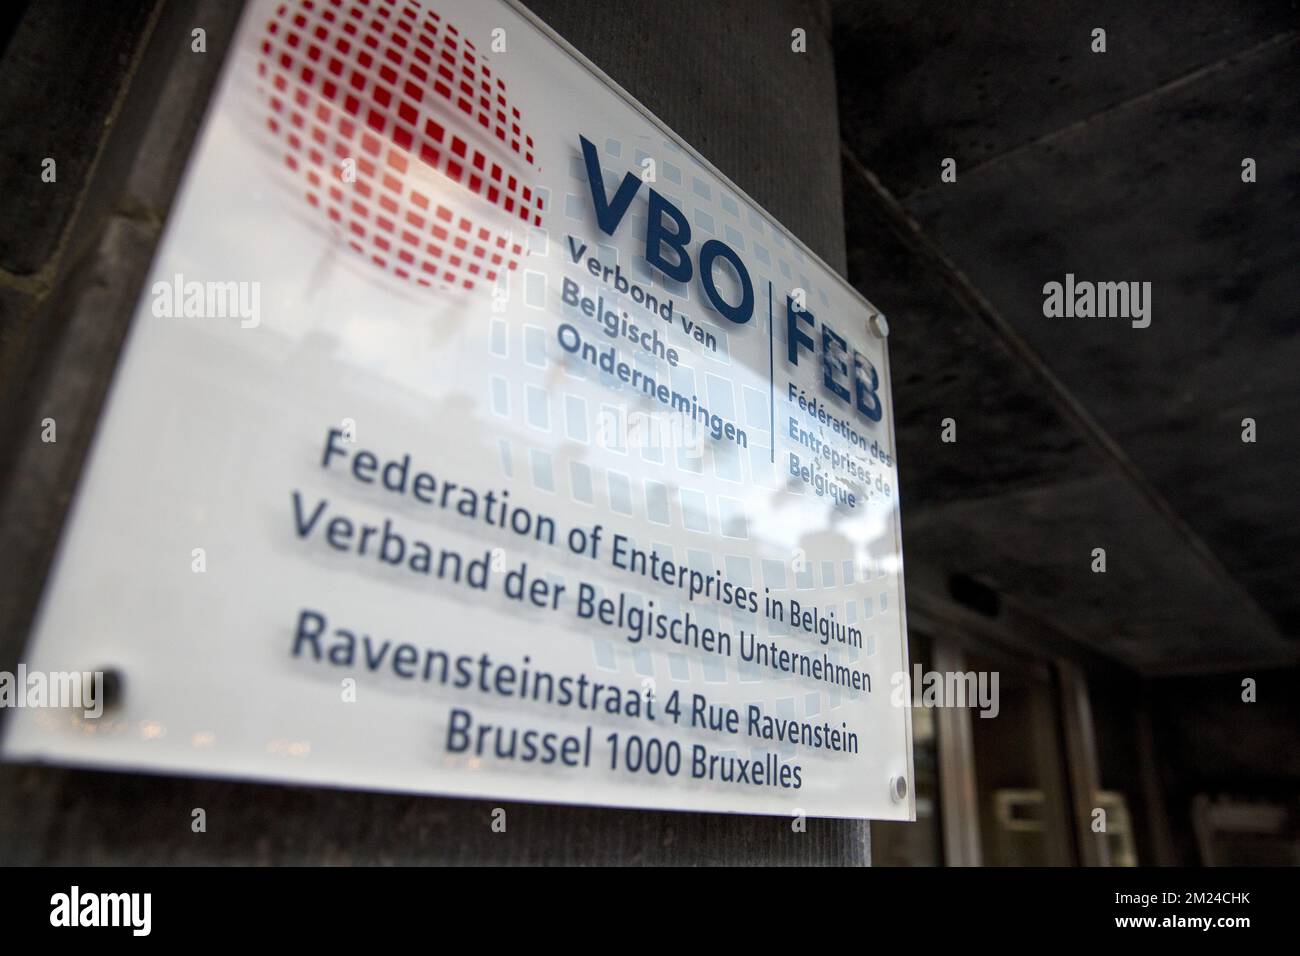 L'illustration montre le logo VBO FEB avant une réunion du groupe des 10 (Groep van Tien - Groupe de dix) est une sélection de partenaires sociaux, y compris des représentants syndicaux et des organisations d'employeurs, au siège DE FEB-VBO à Bruxelles, le mercredi 11 janvier 2017. BELGA PHOTO HATIM KAGHAT Banque D'Images